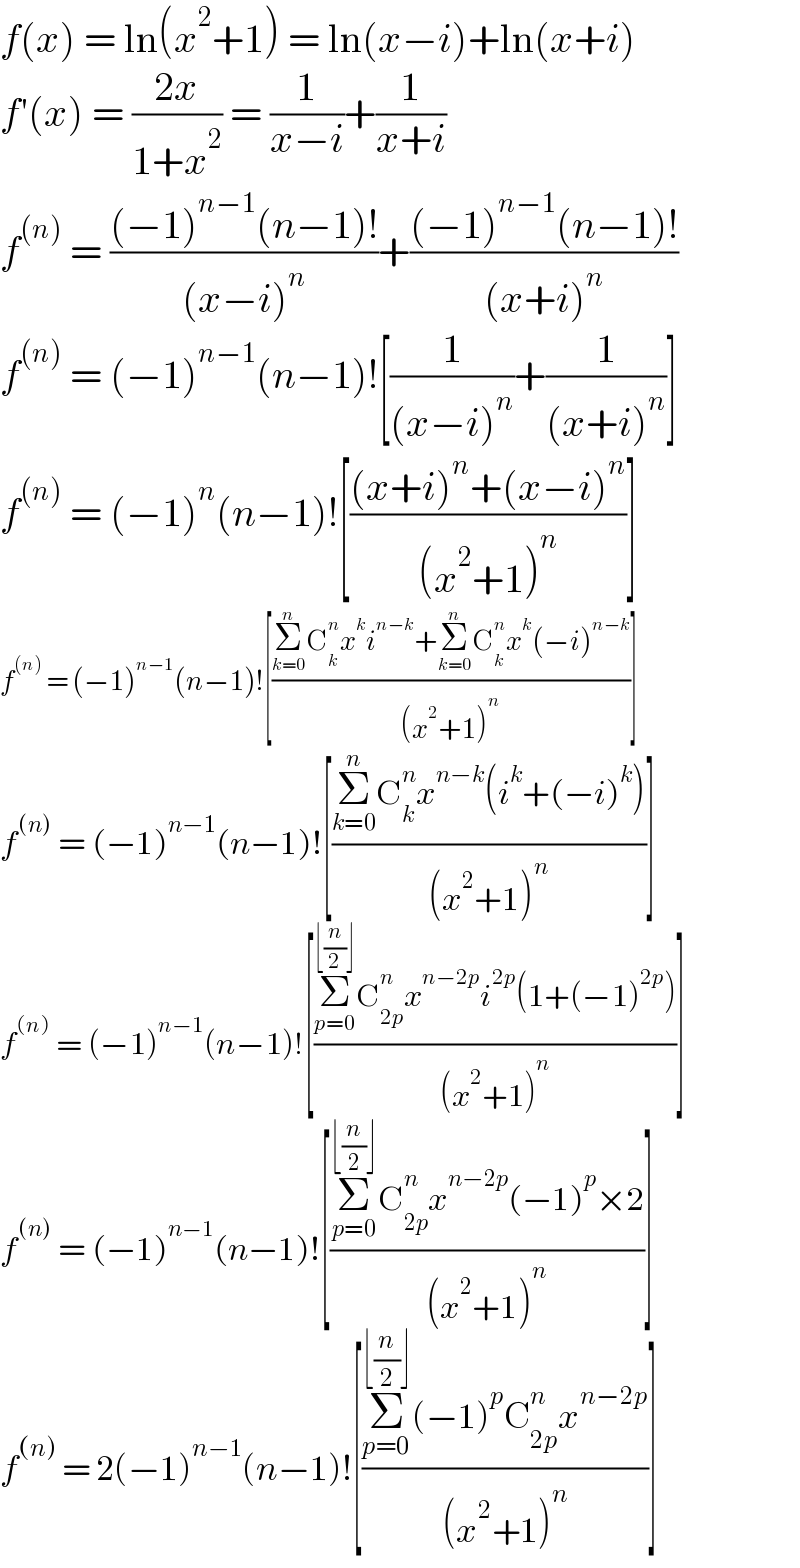 f(x) = ln(x^2 +1) = ln(x−i)+ln(x+i)  f′(x) = ((2x)/(1+x^2 )) = (1/(x−i))+(1/(x+i))  f^((n))  = (((−1)^(n−1) (n−1)!)/((x−i)^n ))+(((−1)^(n−1) (n−1)!)/((x+i)^n ))  f^((n))  = (−1)^(n−1) (n−1)![(1/((x−i)^n ))+(1/((x+i)^n ))]  f^((n))  = (−1)^n (n−1)![(((x+i)^n +(x−i)^n )/((x^2 +1)^n ))]  f^((n))  = (−1)^(n−1) (n−1)![((Σ_(k=0) ^n C_k ^n x^k i^(n−k) +Σ_(k=0) ^n C_k ^n x^k (−i)^(n−k) )/((x^2 +1)^n ))]  f^((n))  = (−1)^(n−1) (n−1)![((Σ_(k=0) ^n C_k ^n x^(n−k) (i^k +(−i)^k ))/((x^2 +1)^n ))]  f^((n))  = (−1)^(n−1) (n−1)![((Σ_(p=0) ^(⌊(n/2)⌋) C_(2p) ^n x^(n−2p) i^(2p) (1+(−1)^(2p) ))/((x^2 +1)^n ))]  f^((n))  = (−1)^(n−1) (n−1)![((Σ_(p=0) ^(⌊(n/2)⌋) C_(2p) ^n x^(n−2p) (−1)^p ×2)/((x^2 +1)^n ))]  f^((n))  = 2(−1)^(n−1) (n−1)![((Σ_(p=0) ^(⌊(n/2)⌋) (−1)^p C_(2p) ^n x^(n−2p) )/((x^2 +1)^n ))]  